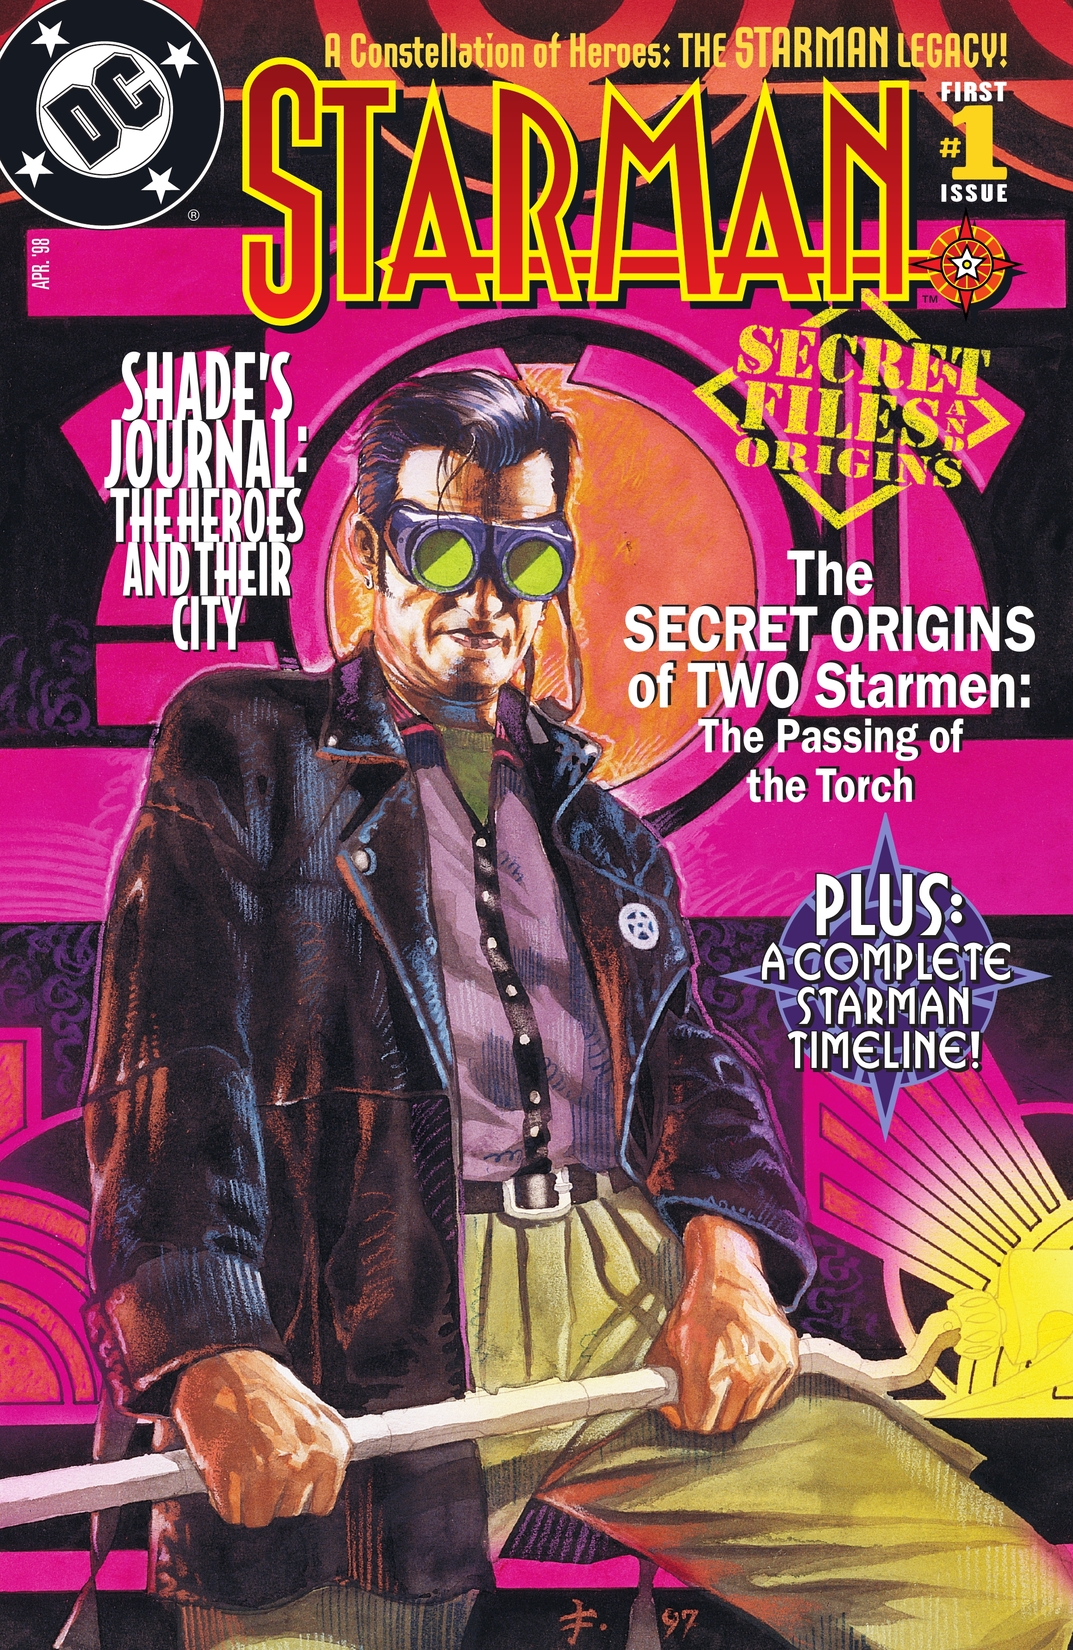 Starman Secret Files (1998-) #1 preview images